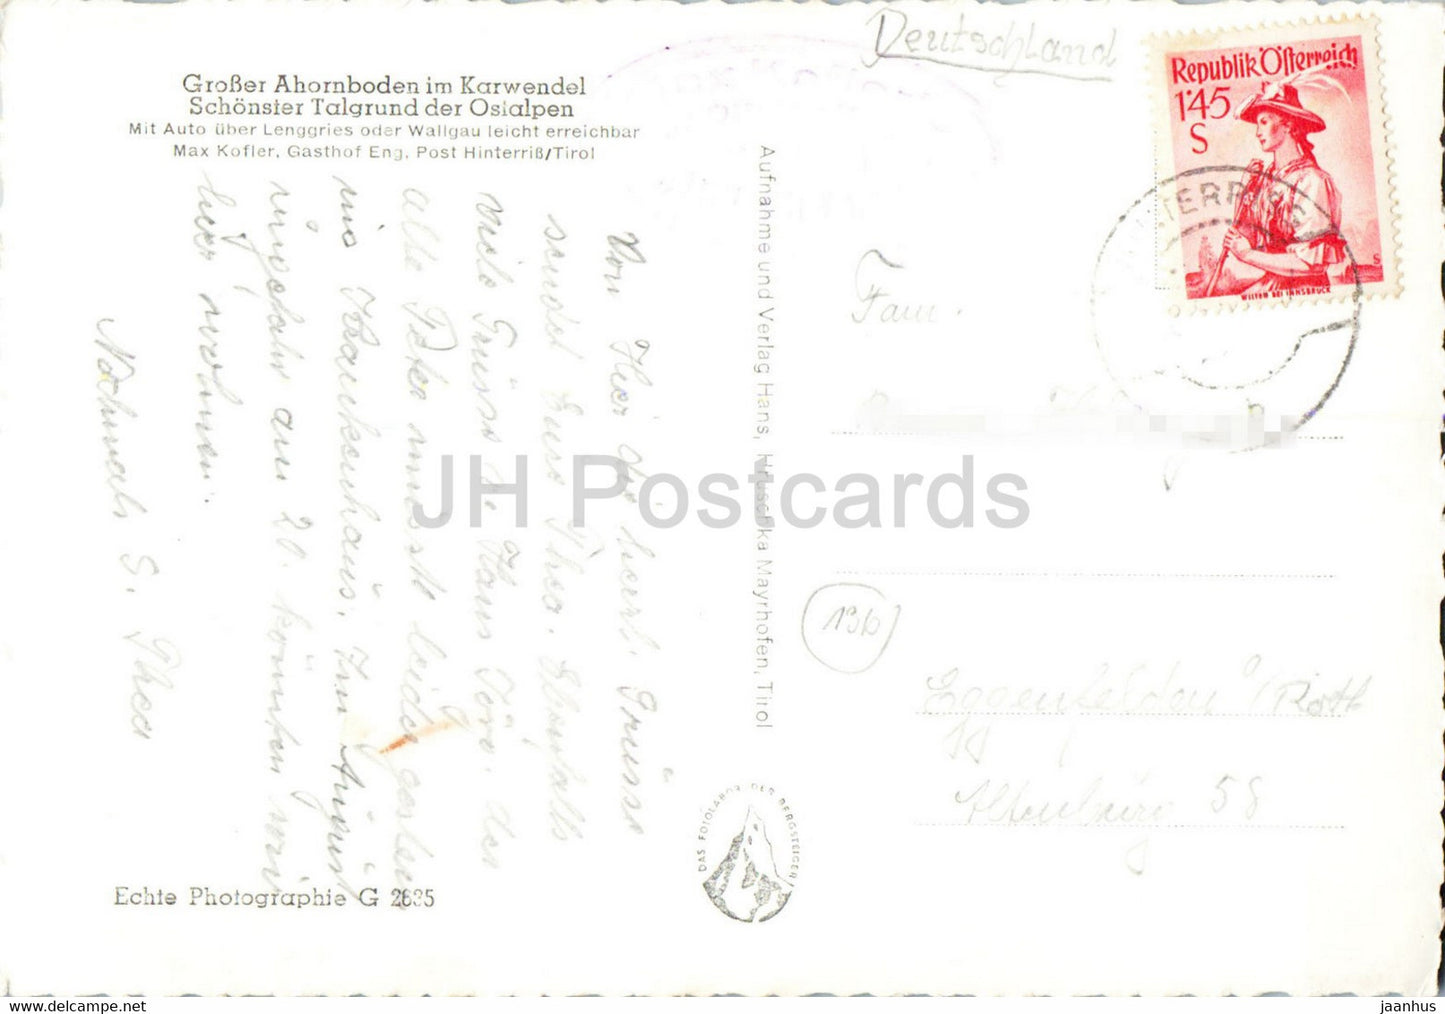 Grosser Ahornboden im Karwendel - voiture - carte postale ancienne - Autriche - d'occasion